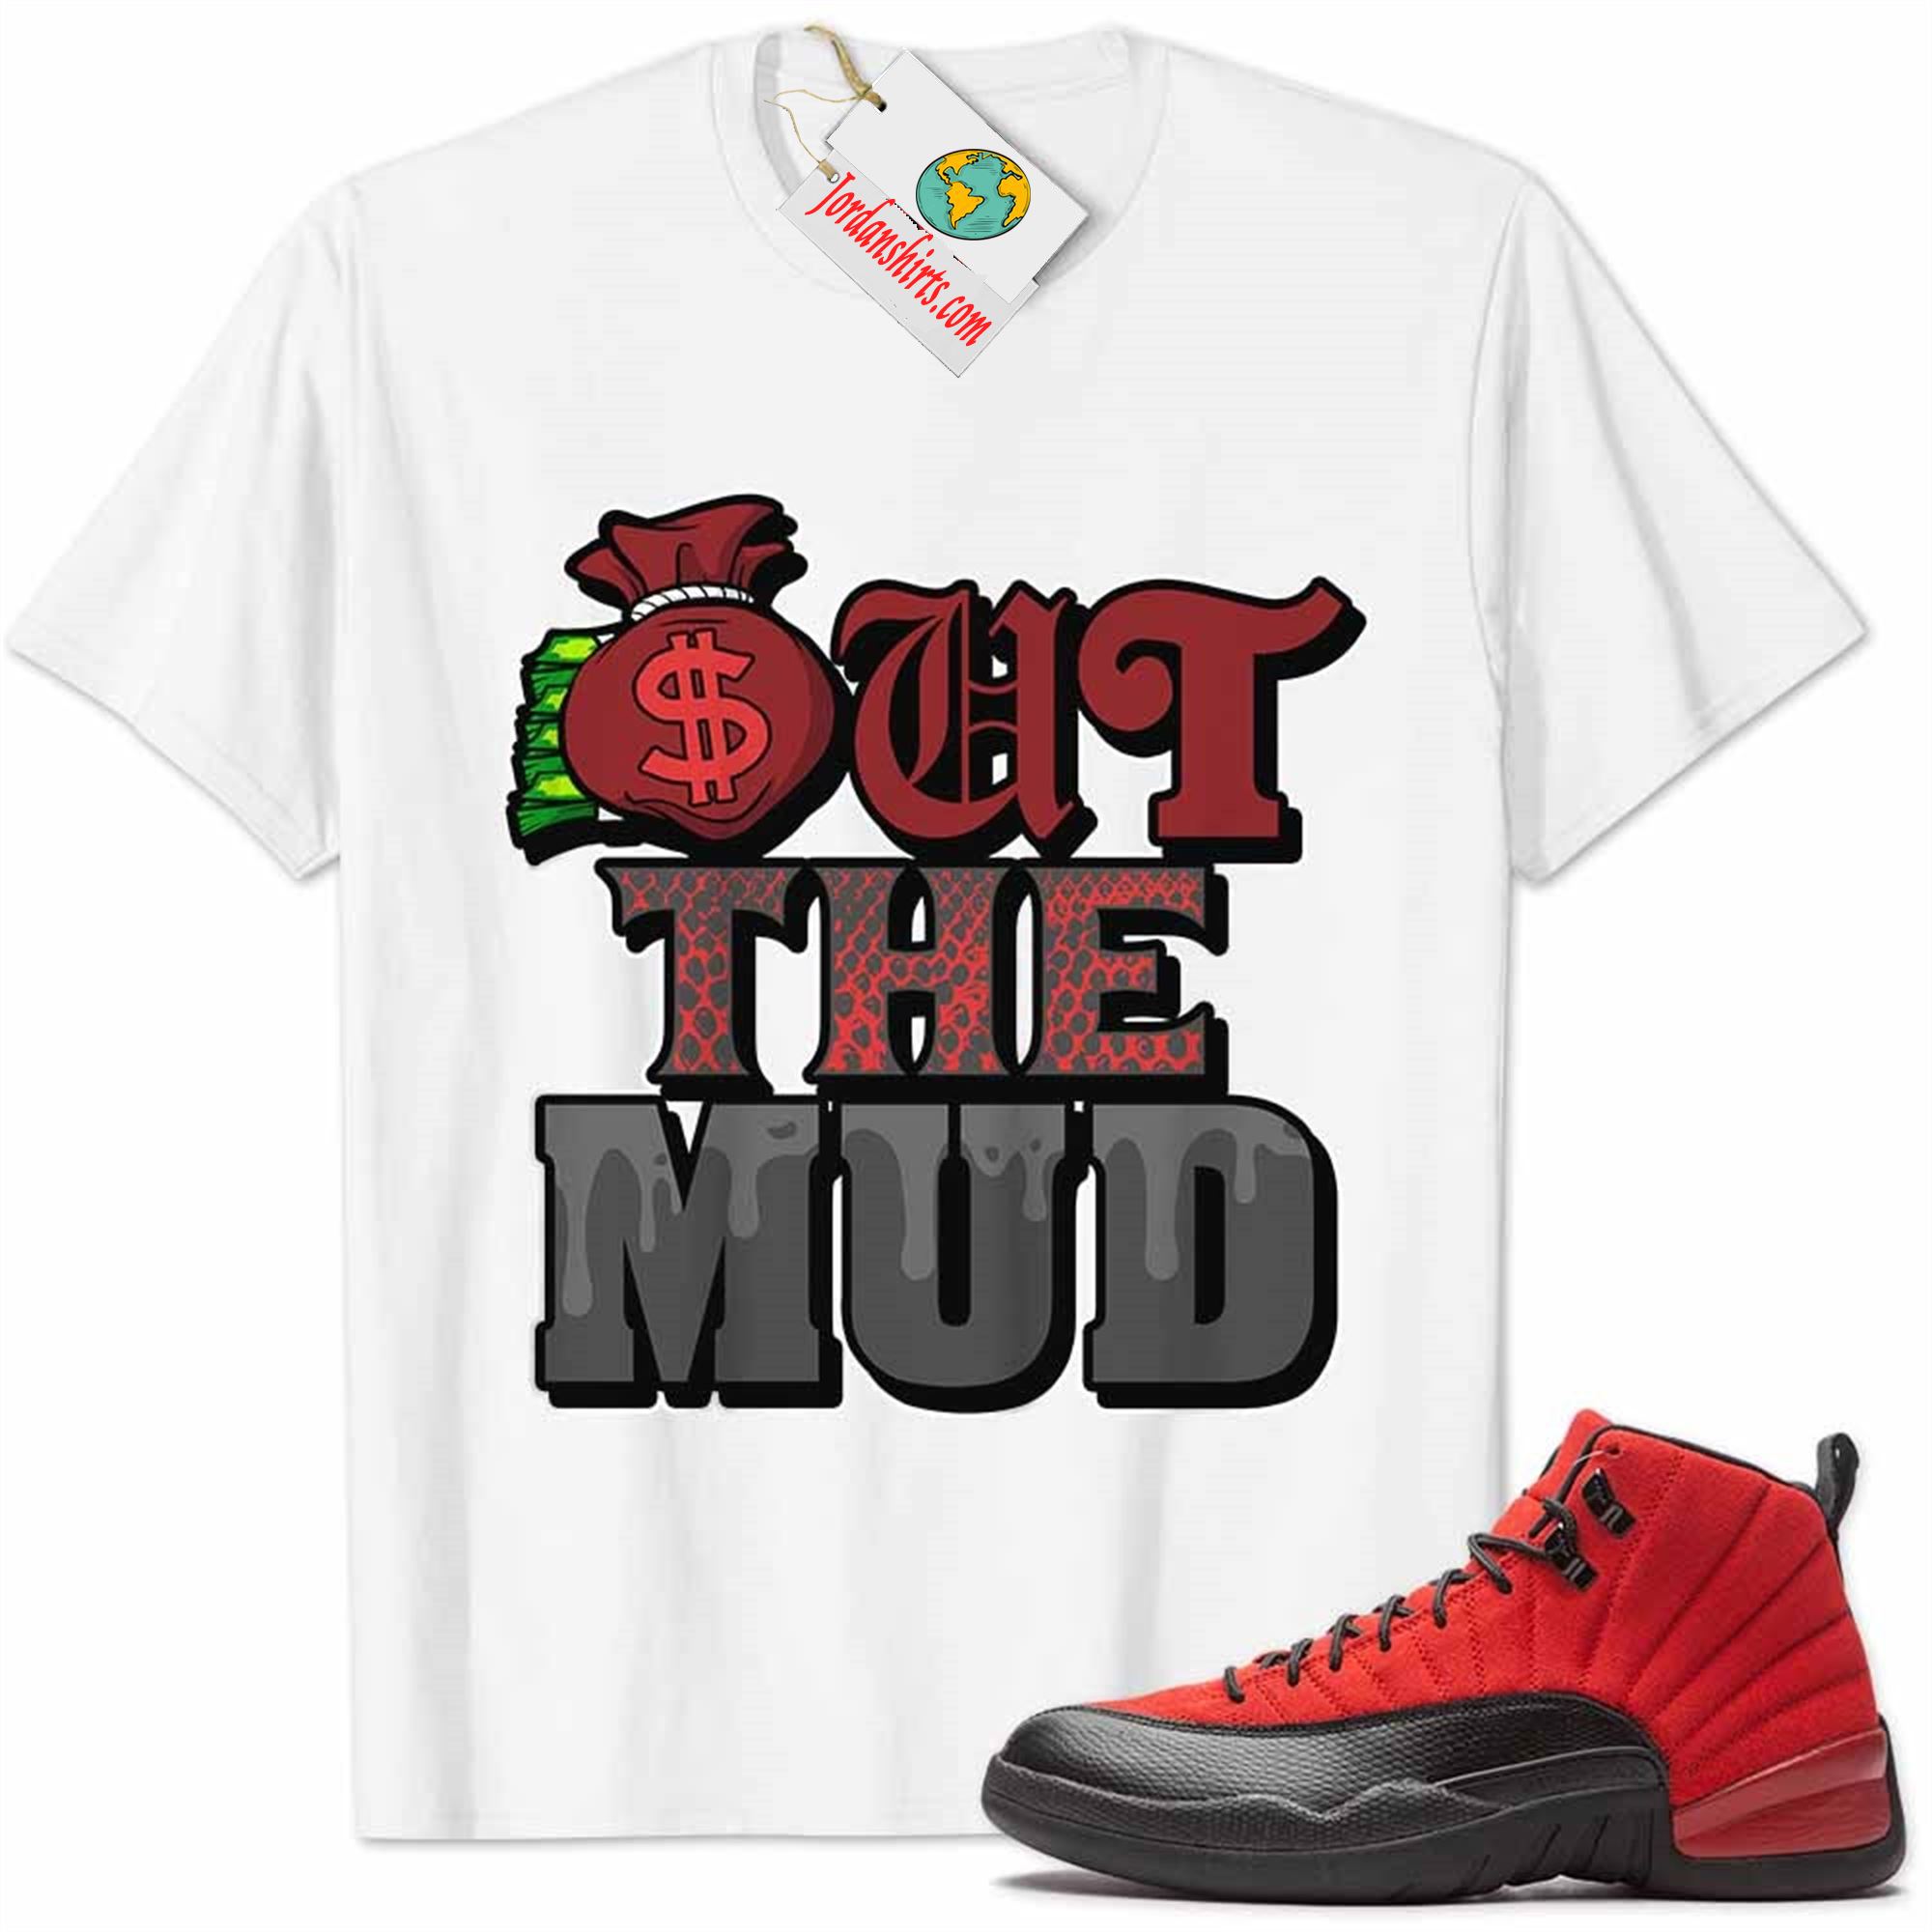 Jordan 12 Shirt, Jordan 12 Reverse Flu Game Shirt Out The Mud Money Bag White Plus Size Up To 5xl